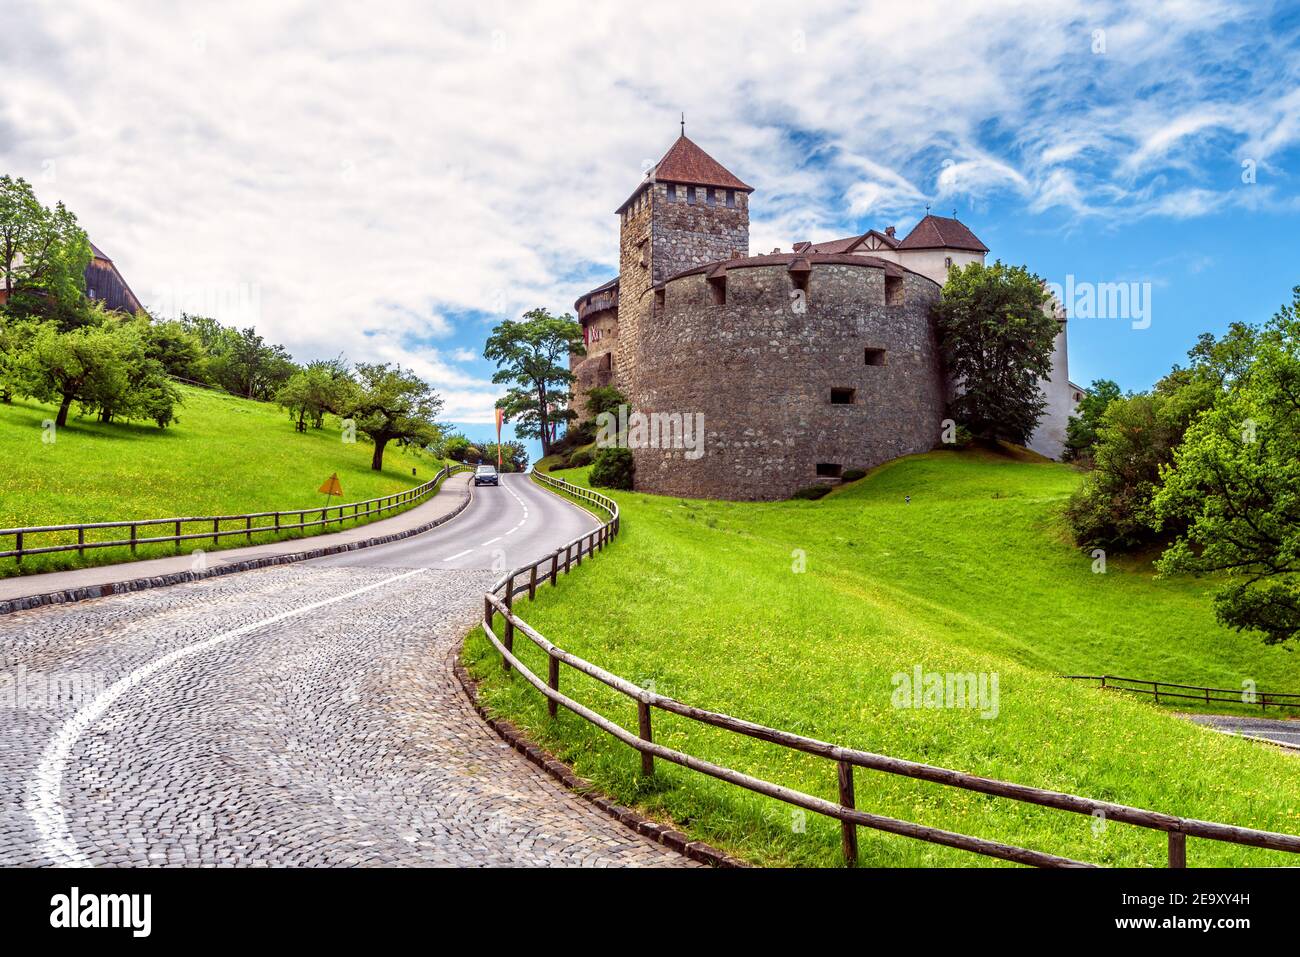 Castello di Vaduz nel Liechtenstein, in Europa. Il vecchio castello reale è un punto di riferimento del Liechtenstein e della Svizzera. Paesaggio con castello medievale, prato verde e. Foto Stock